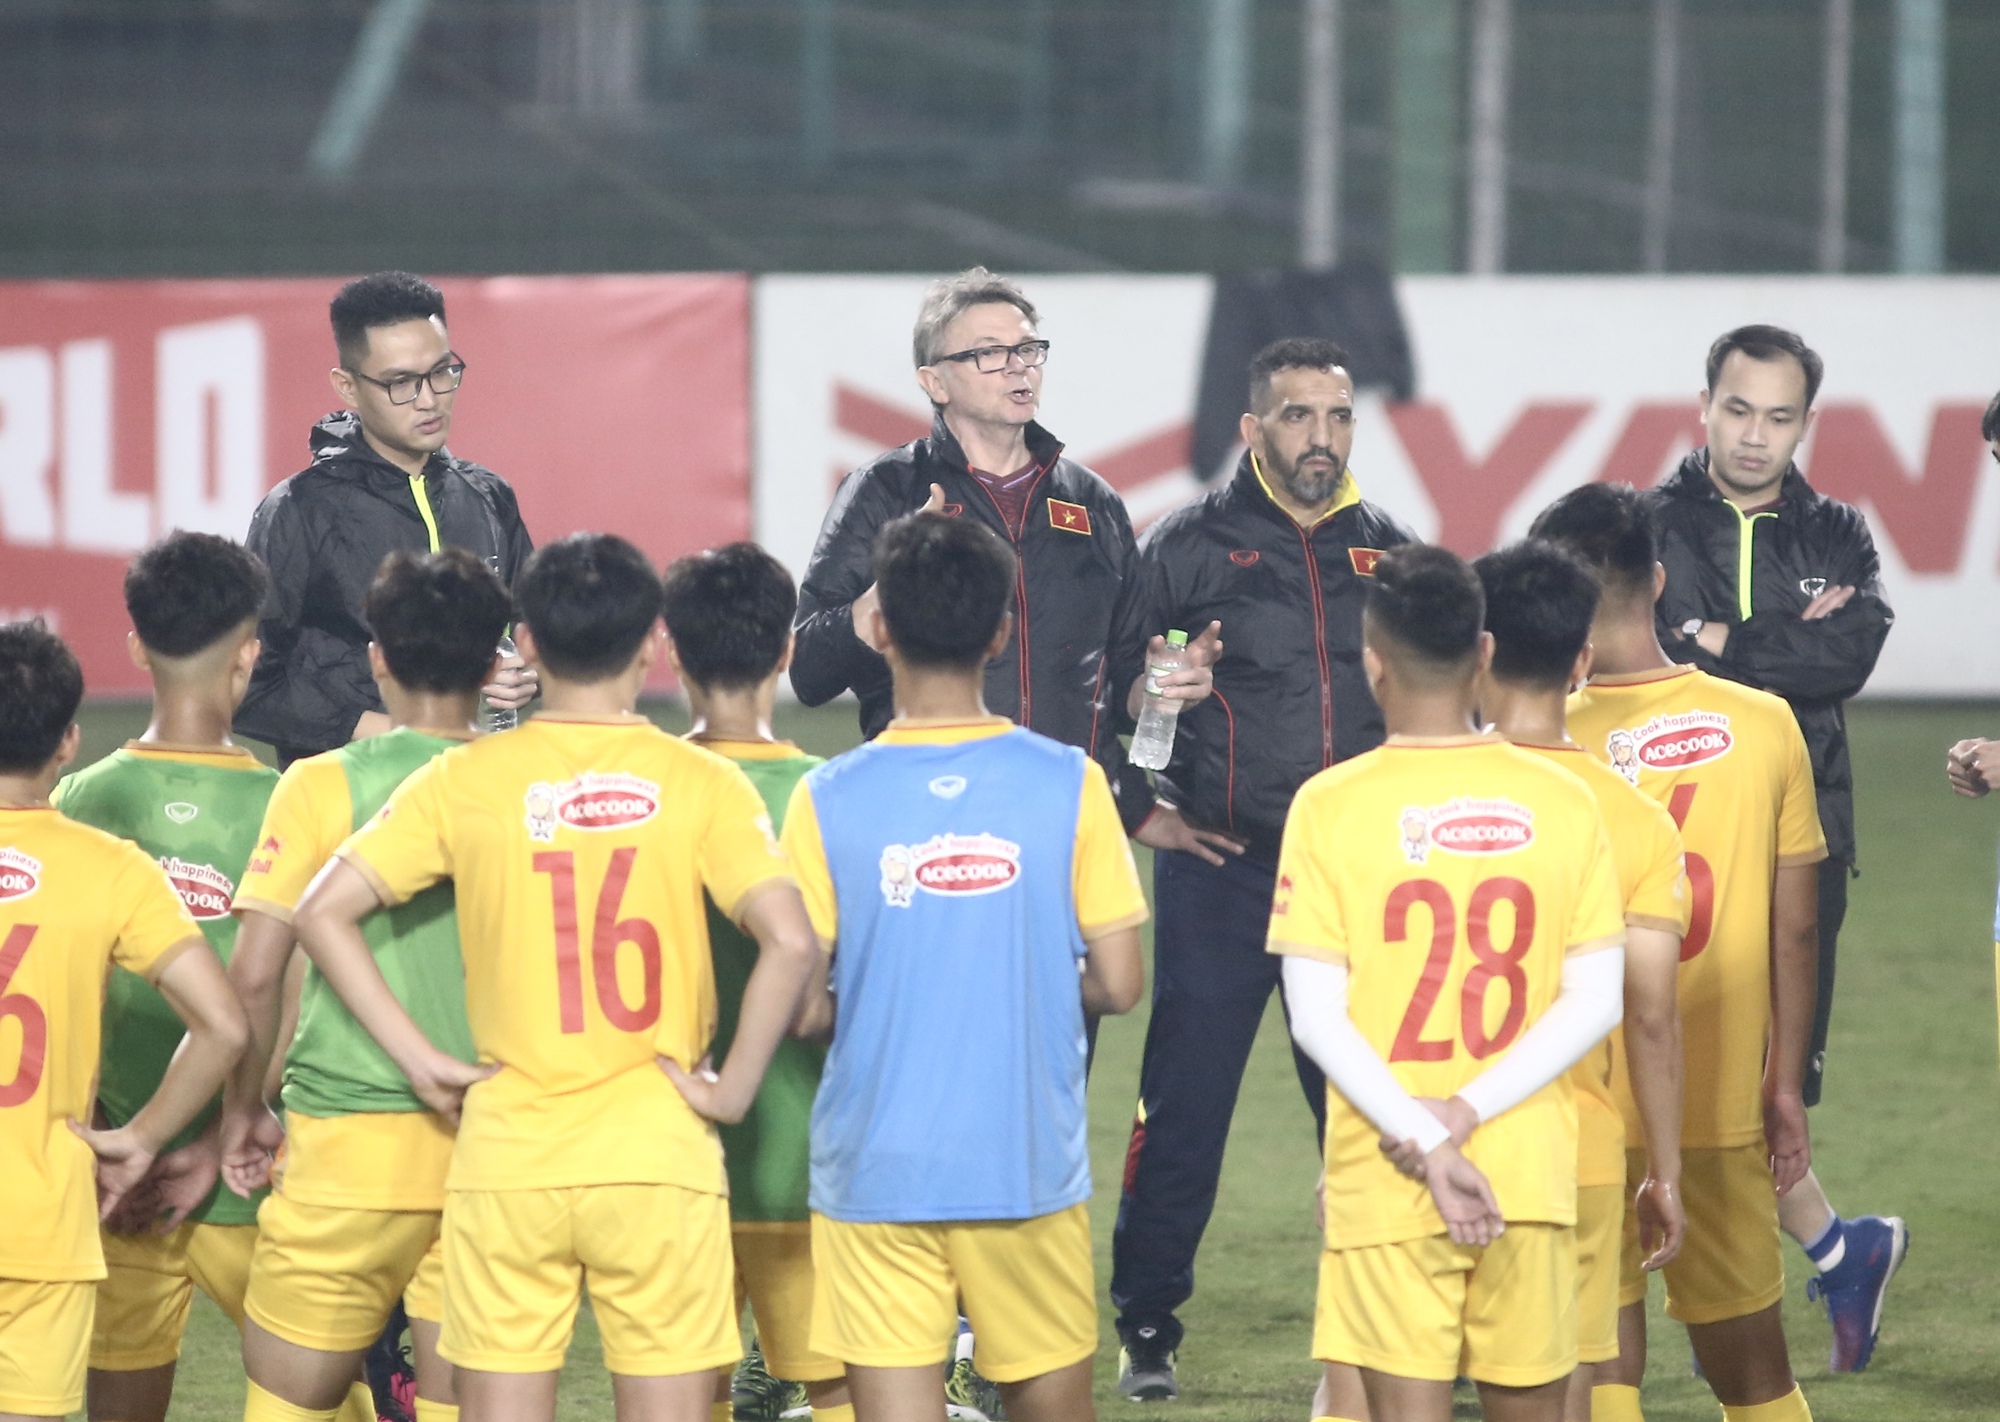 Quế Ngọc Hải, Tuấn Anh sẽ tập luyện cùng đội tuyển U23 Việt Nam